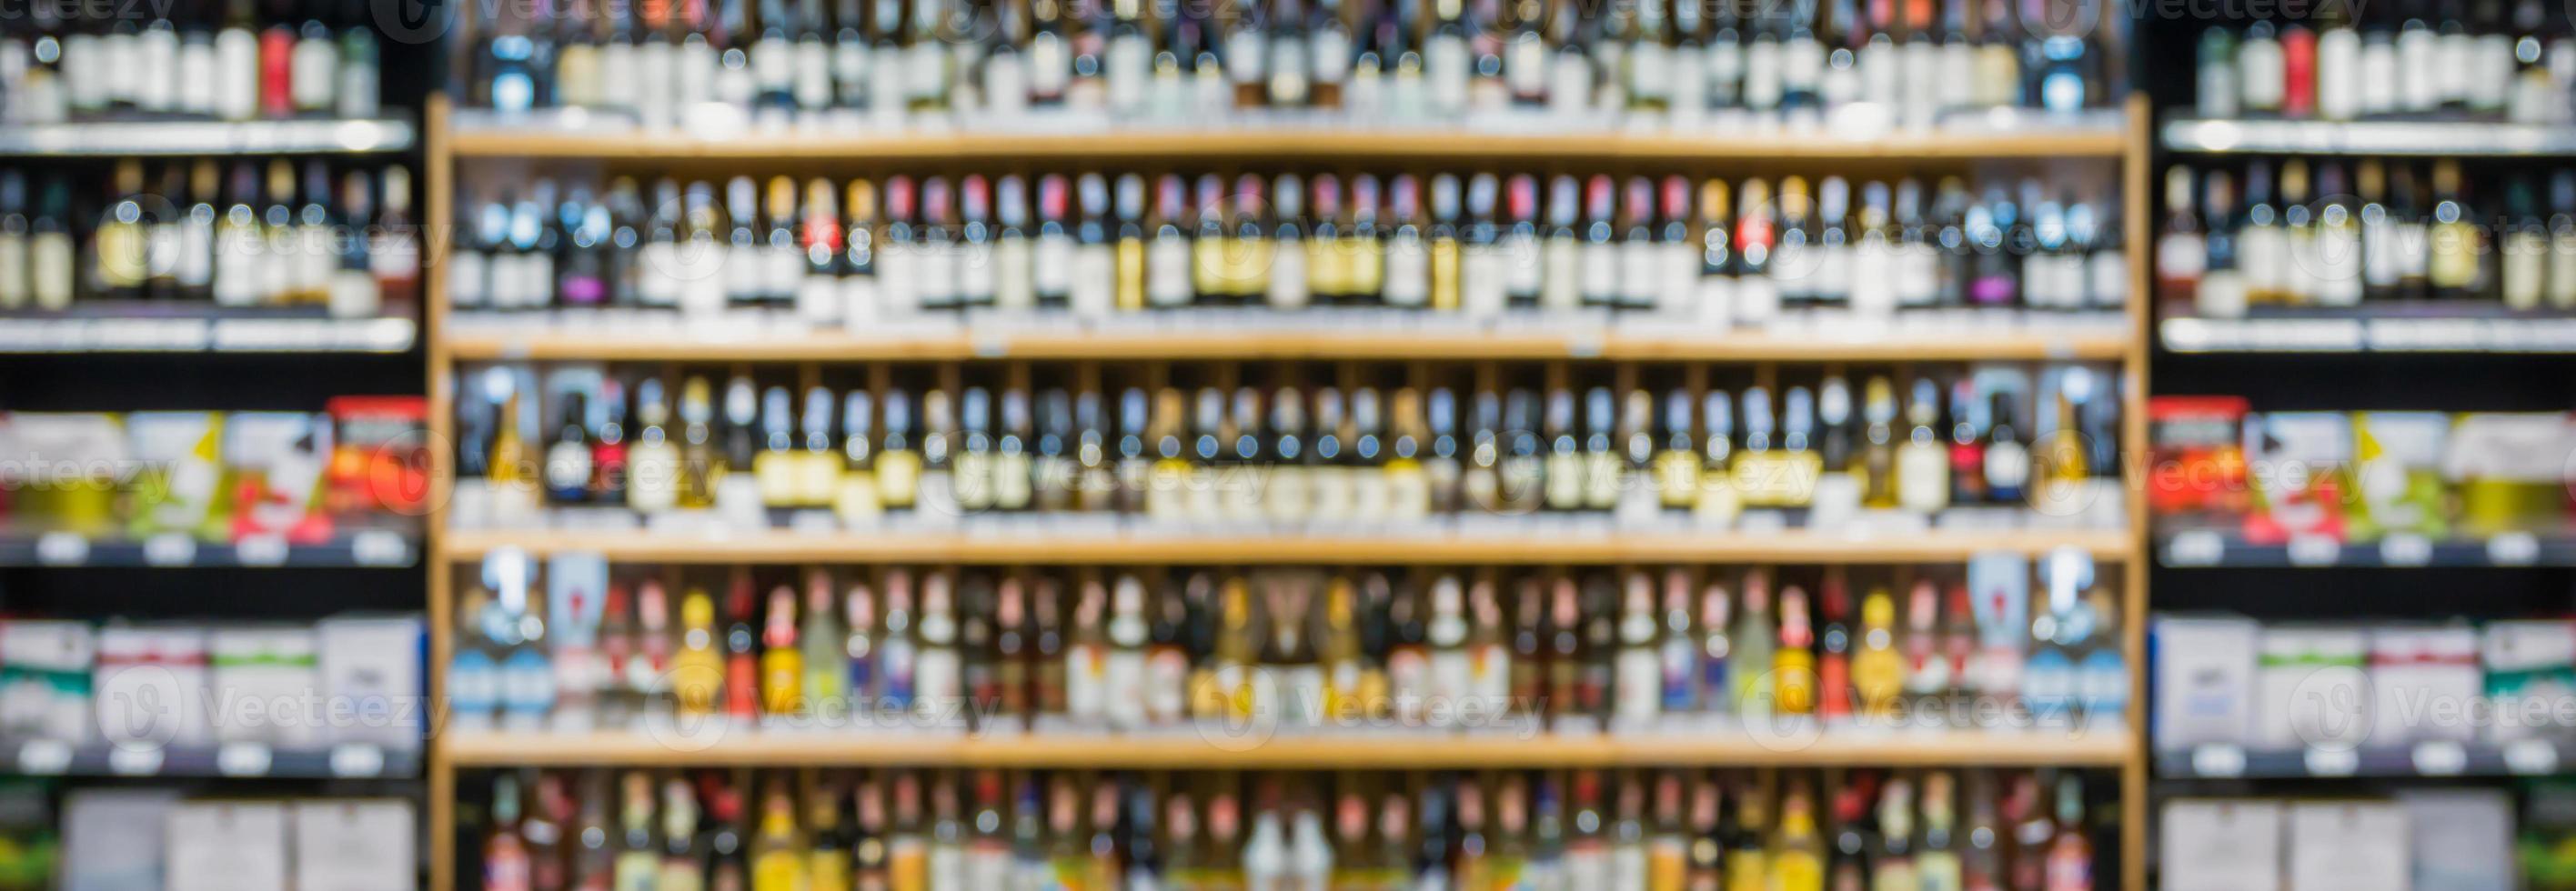 abstract vervagen wijn flessen Aan likeur alcohol schappen in supermarkt op te slaan achtergrond foto